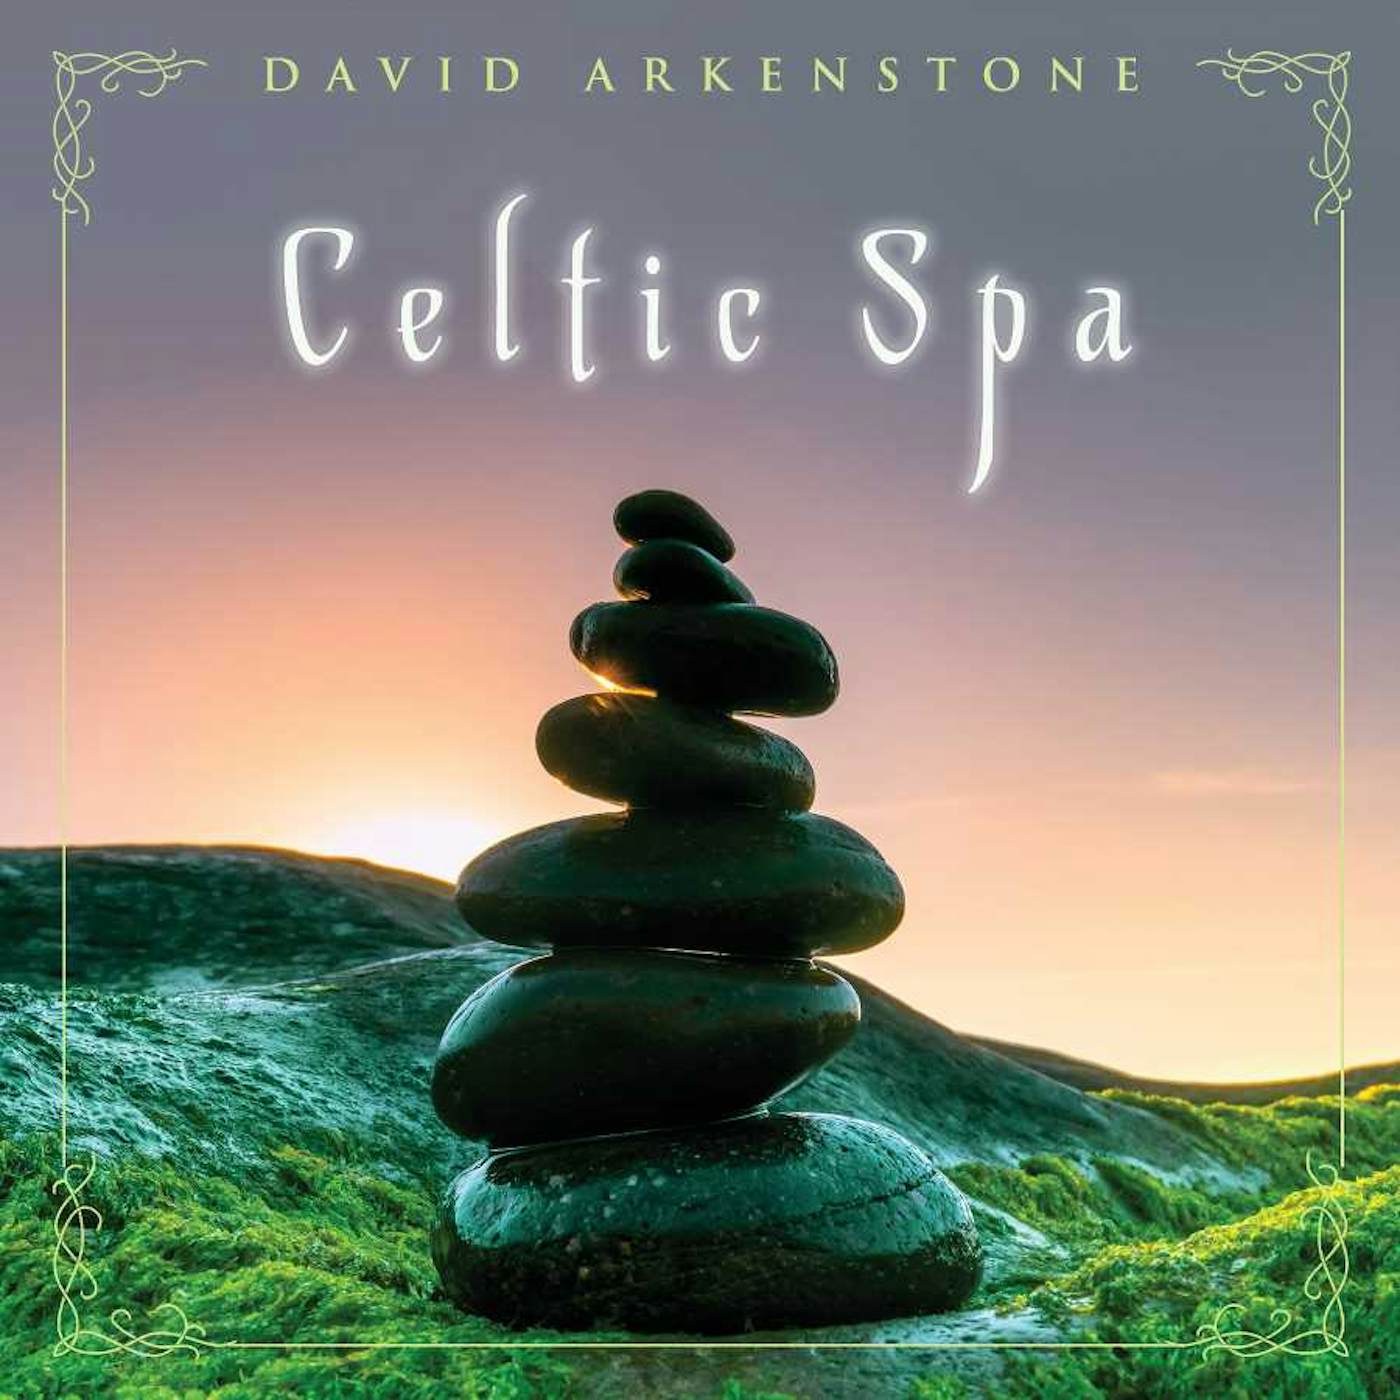 David Arkenstone CELTIC SPA CD